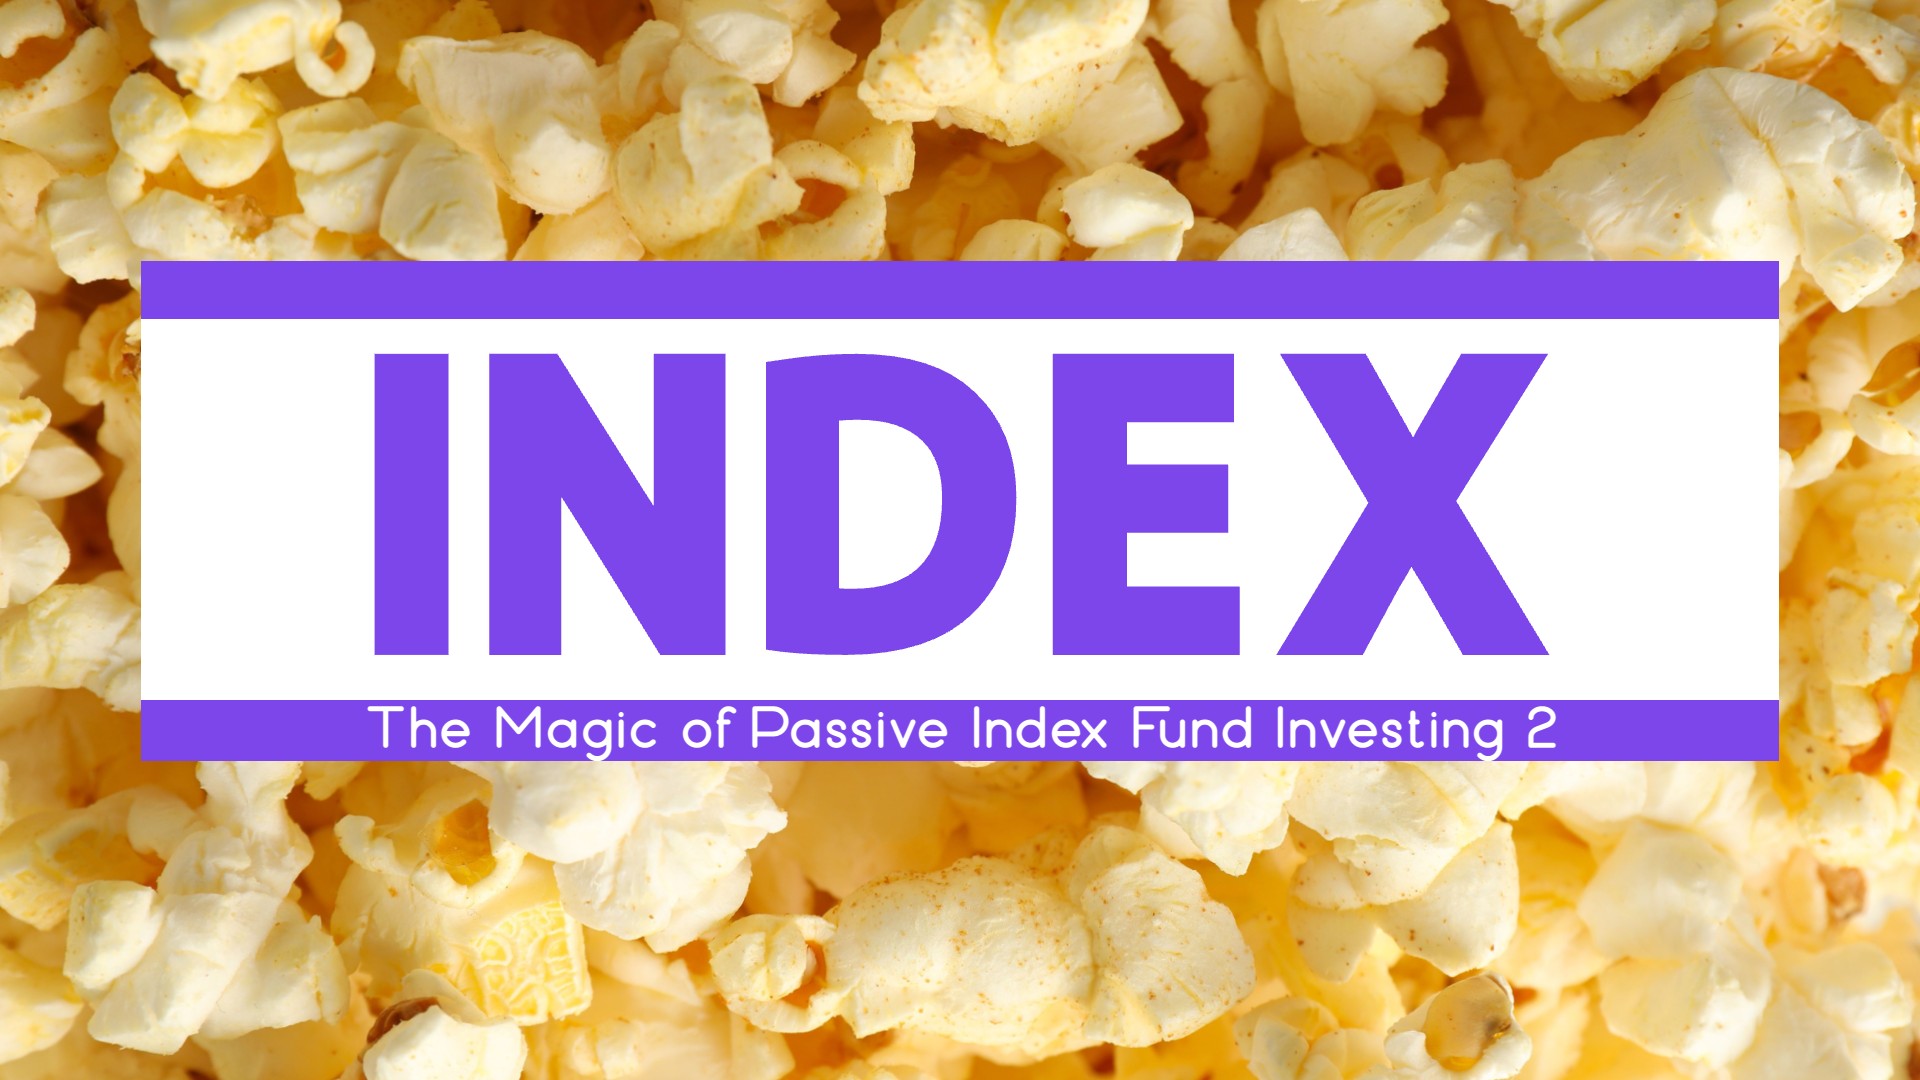 The Magic of Passive Index Fund Investing 2